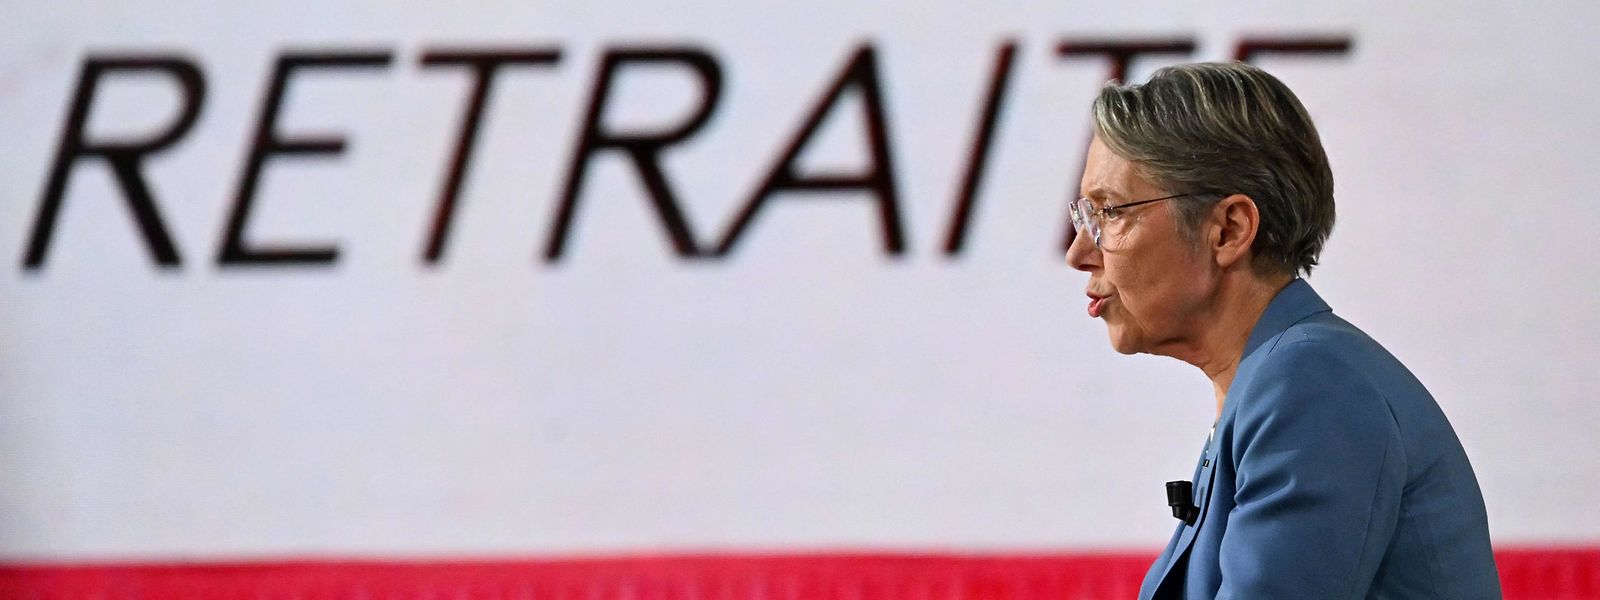 La Première ministre française Elisabeth Borne jeudi dernier, sur le plateau de l'émission politique de France 2 "L'Evénement", où elle a défendu la réforme des retraites.